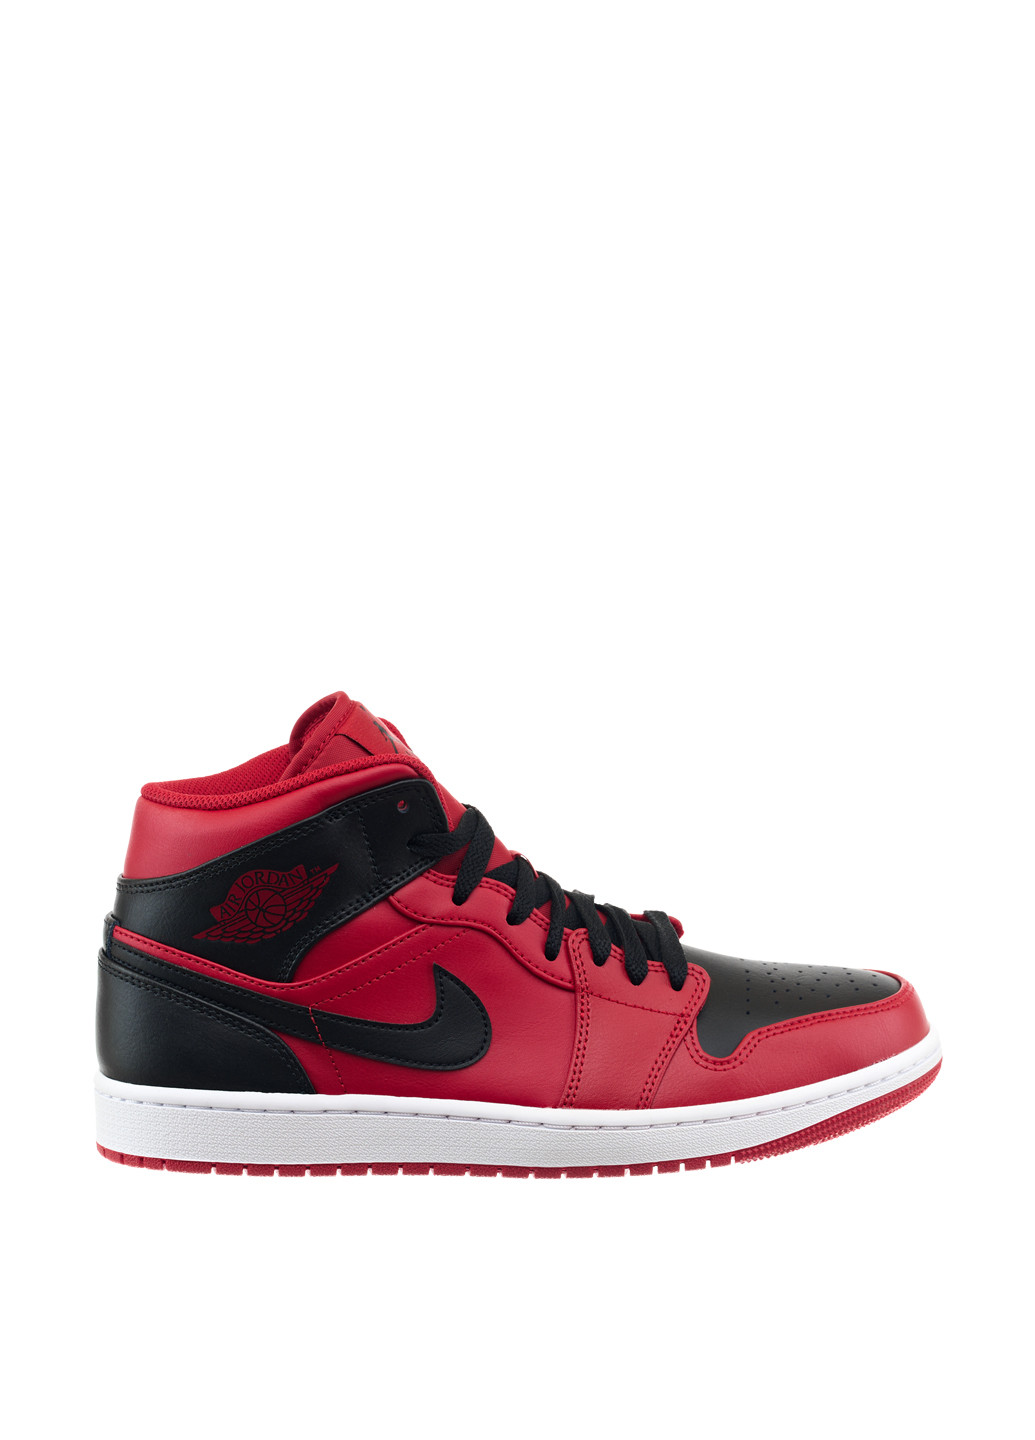 Красные демисезонные кроссовки 554724-660_2024 Jordan 1 MID